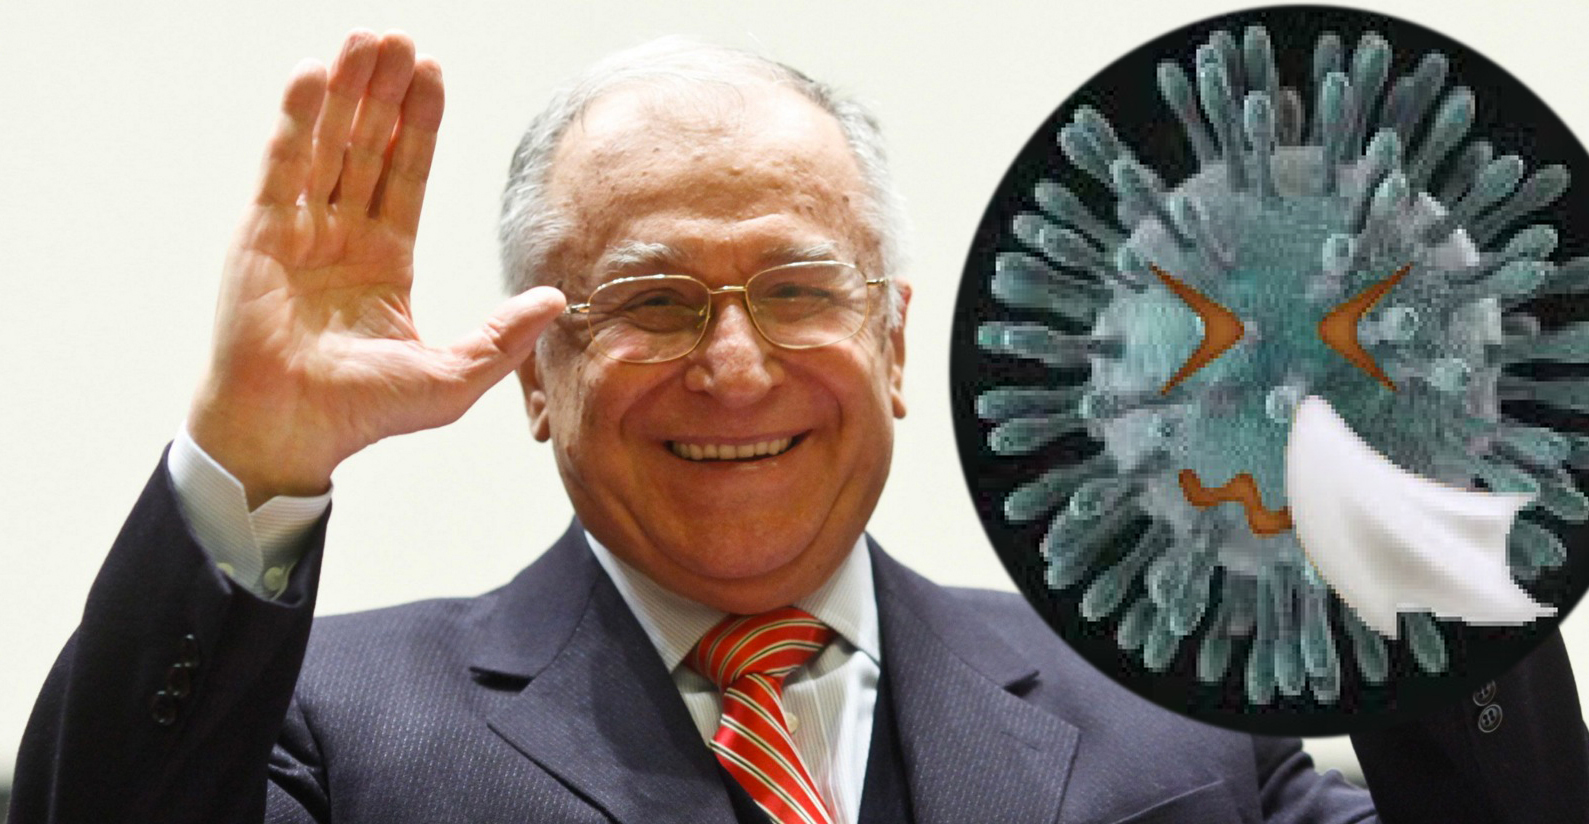 Coronavirusul a început să strănute după ce a avut contact direct cu Iliescu!